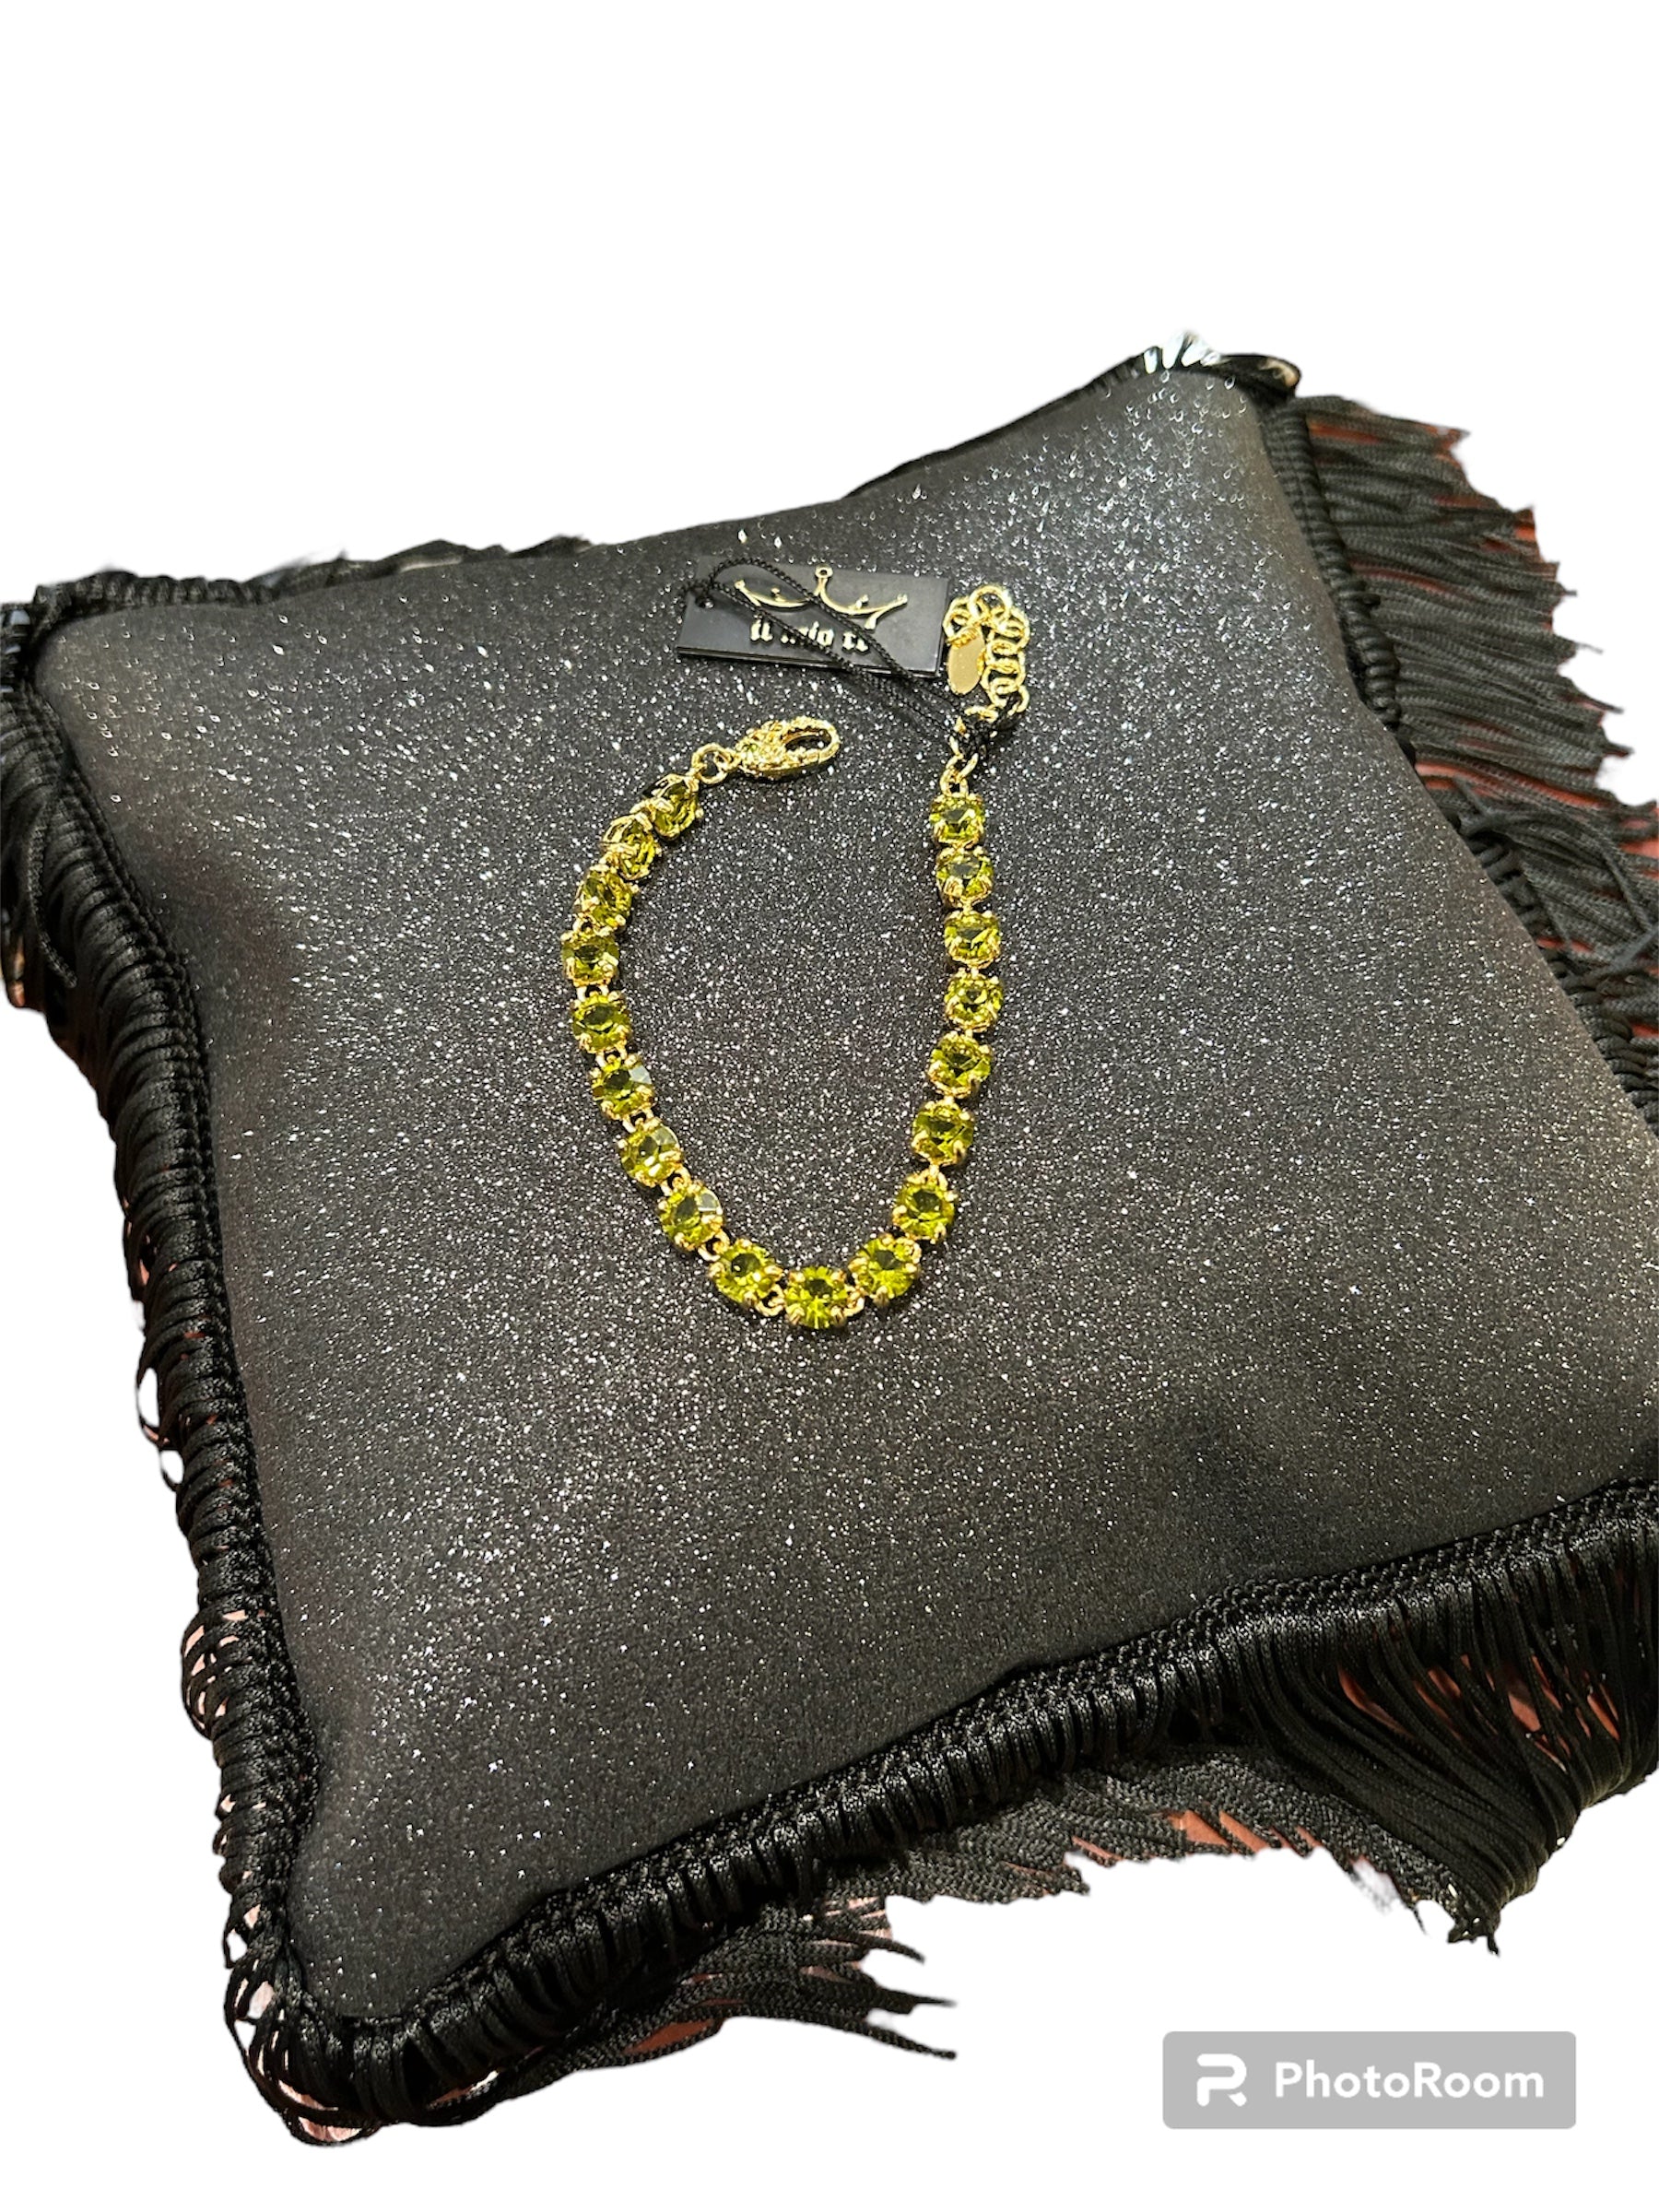 IL Mio Re - Bracelet with green peridot stones in gilded bronze - ILMIORE BR 020 GV